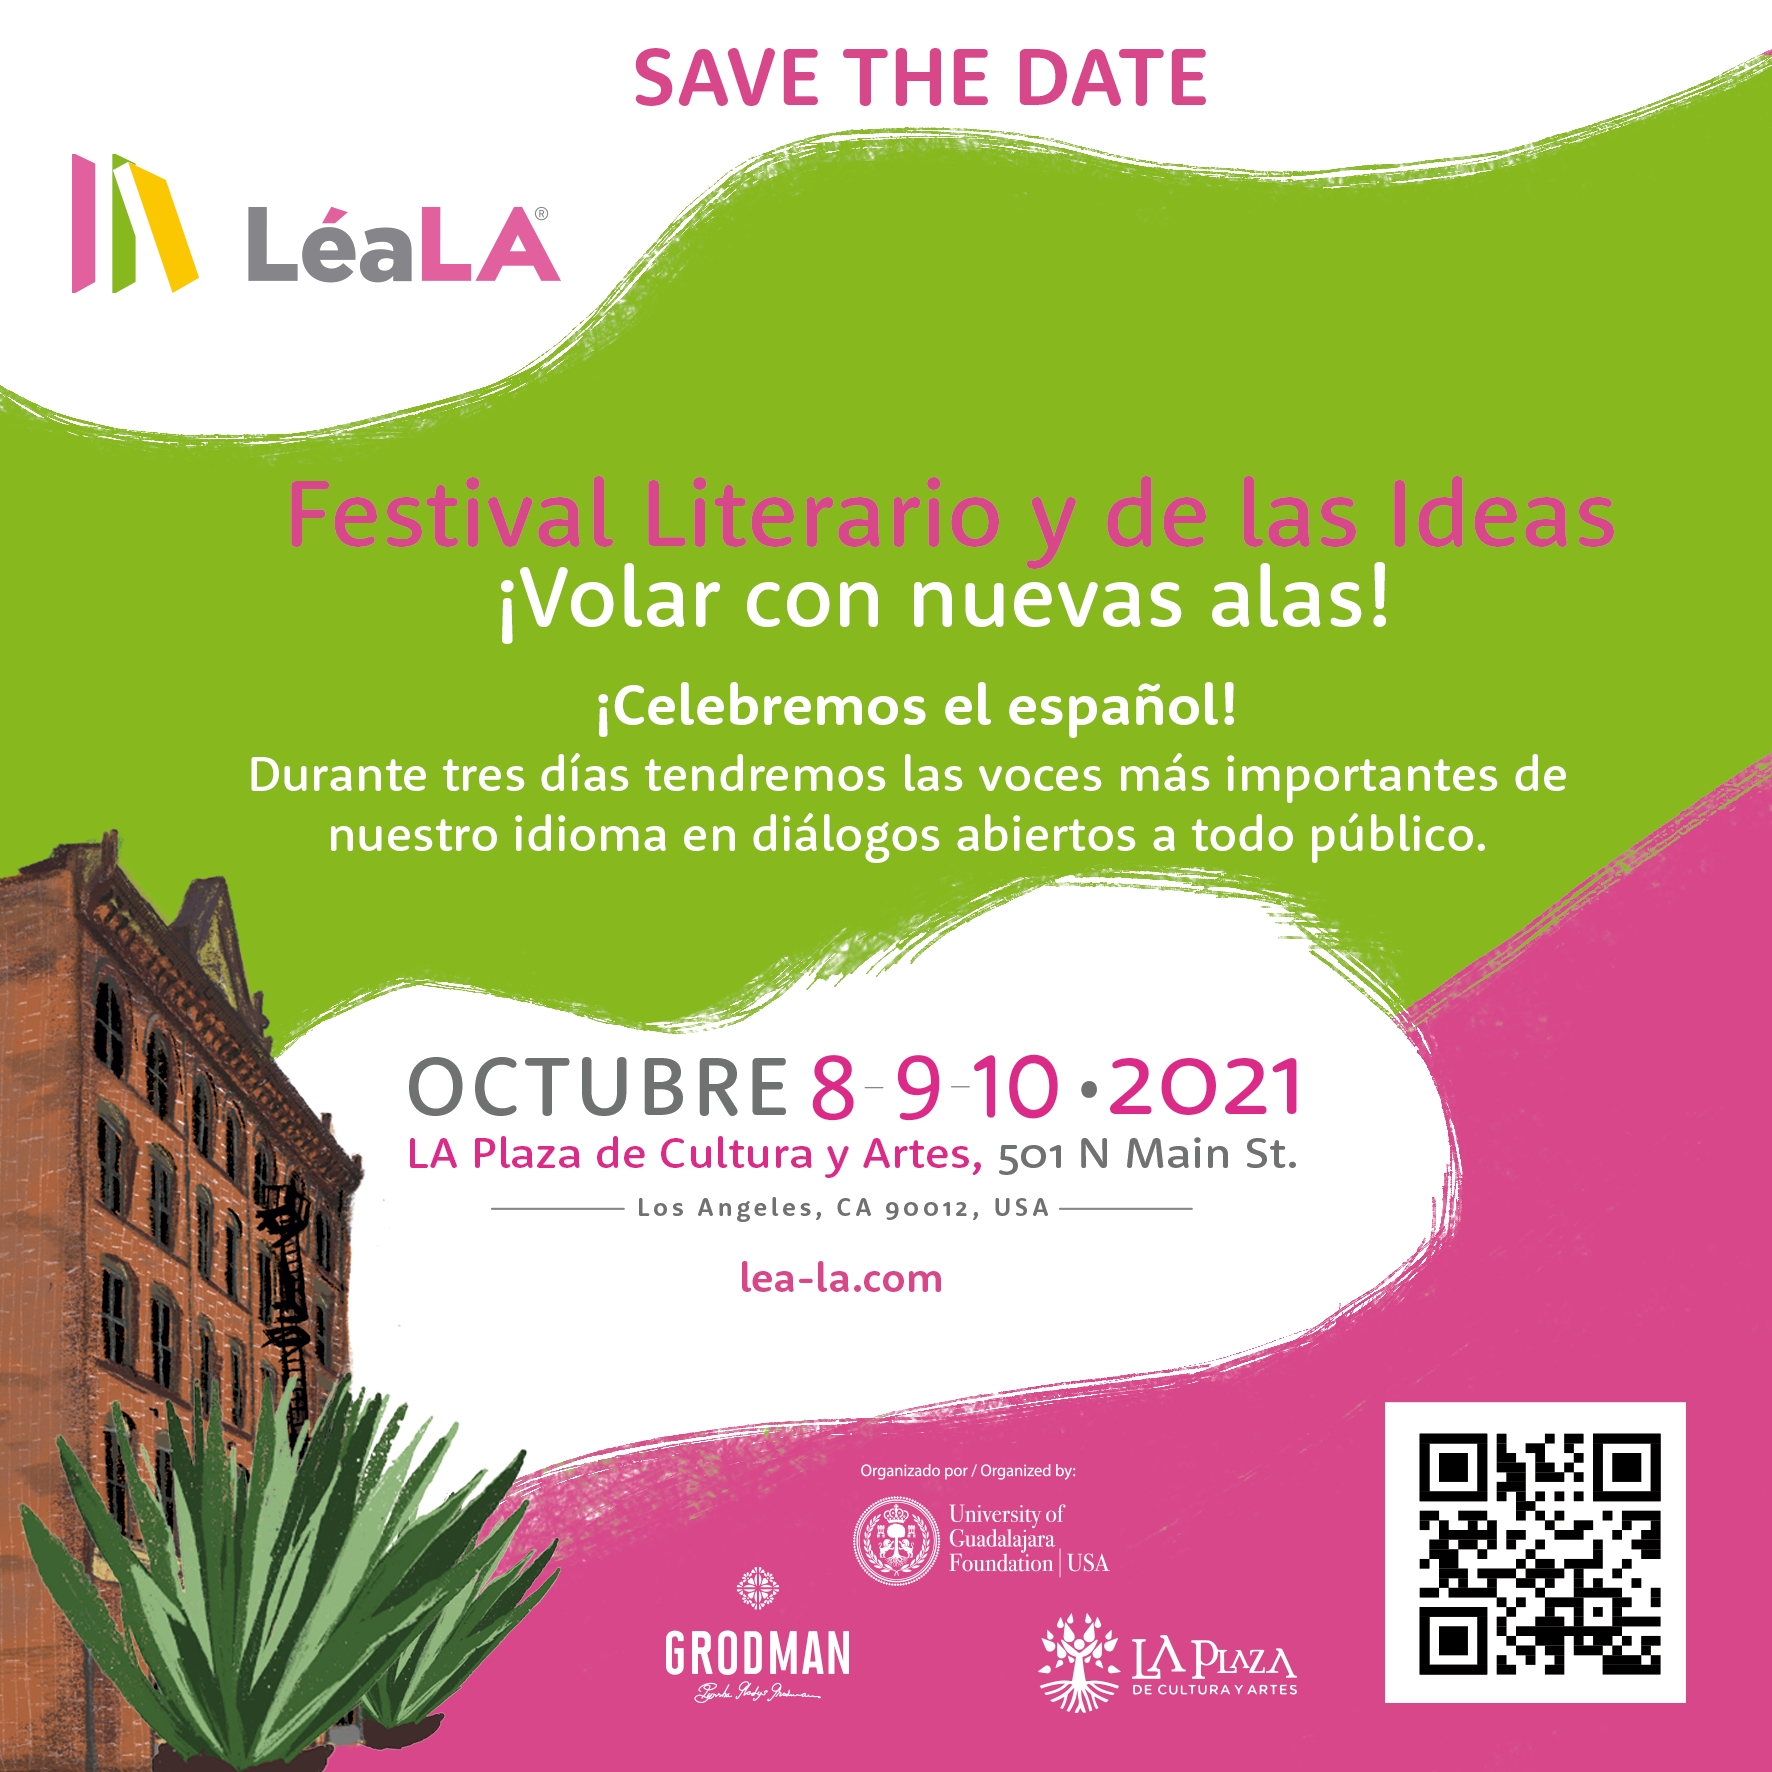 Se realizará del 8 al 10 de octubre en Los Ángeles, en su formato de Festival Literario en la Plaza de Cultura y Artes